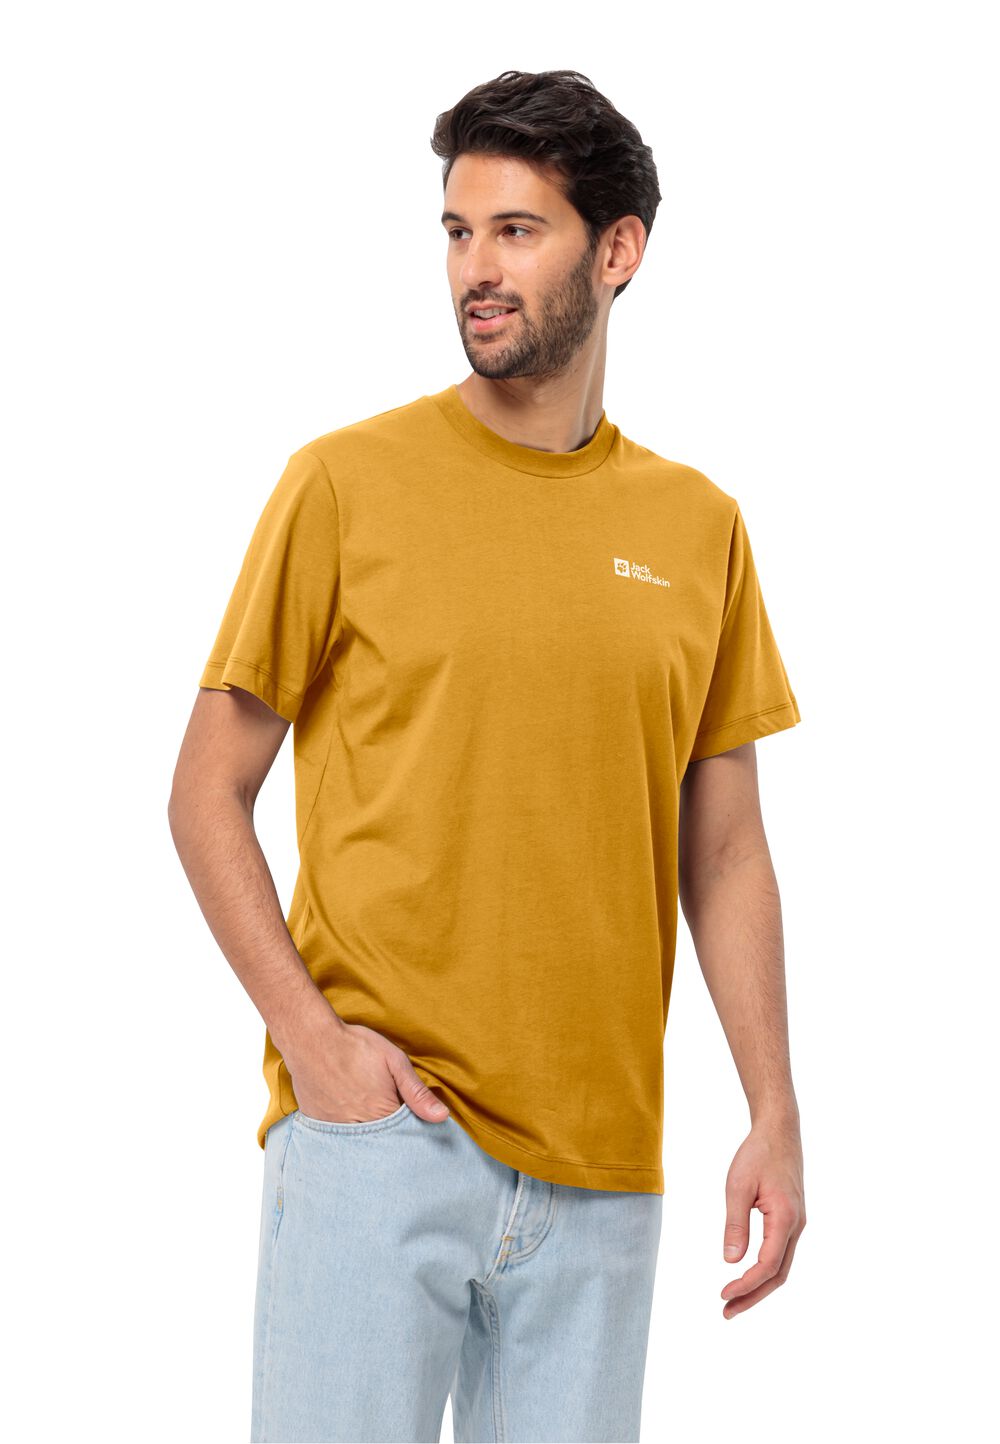 Jack Wolfskin Essential T-Shirt Men Heren T-shirt van biologisch katoen M bruin curry